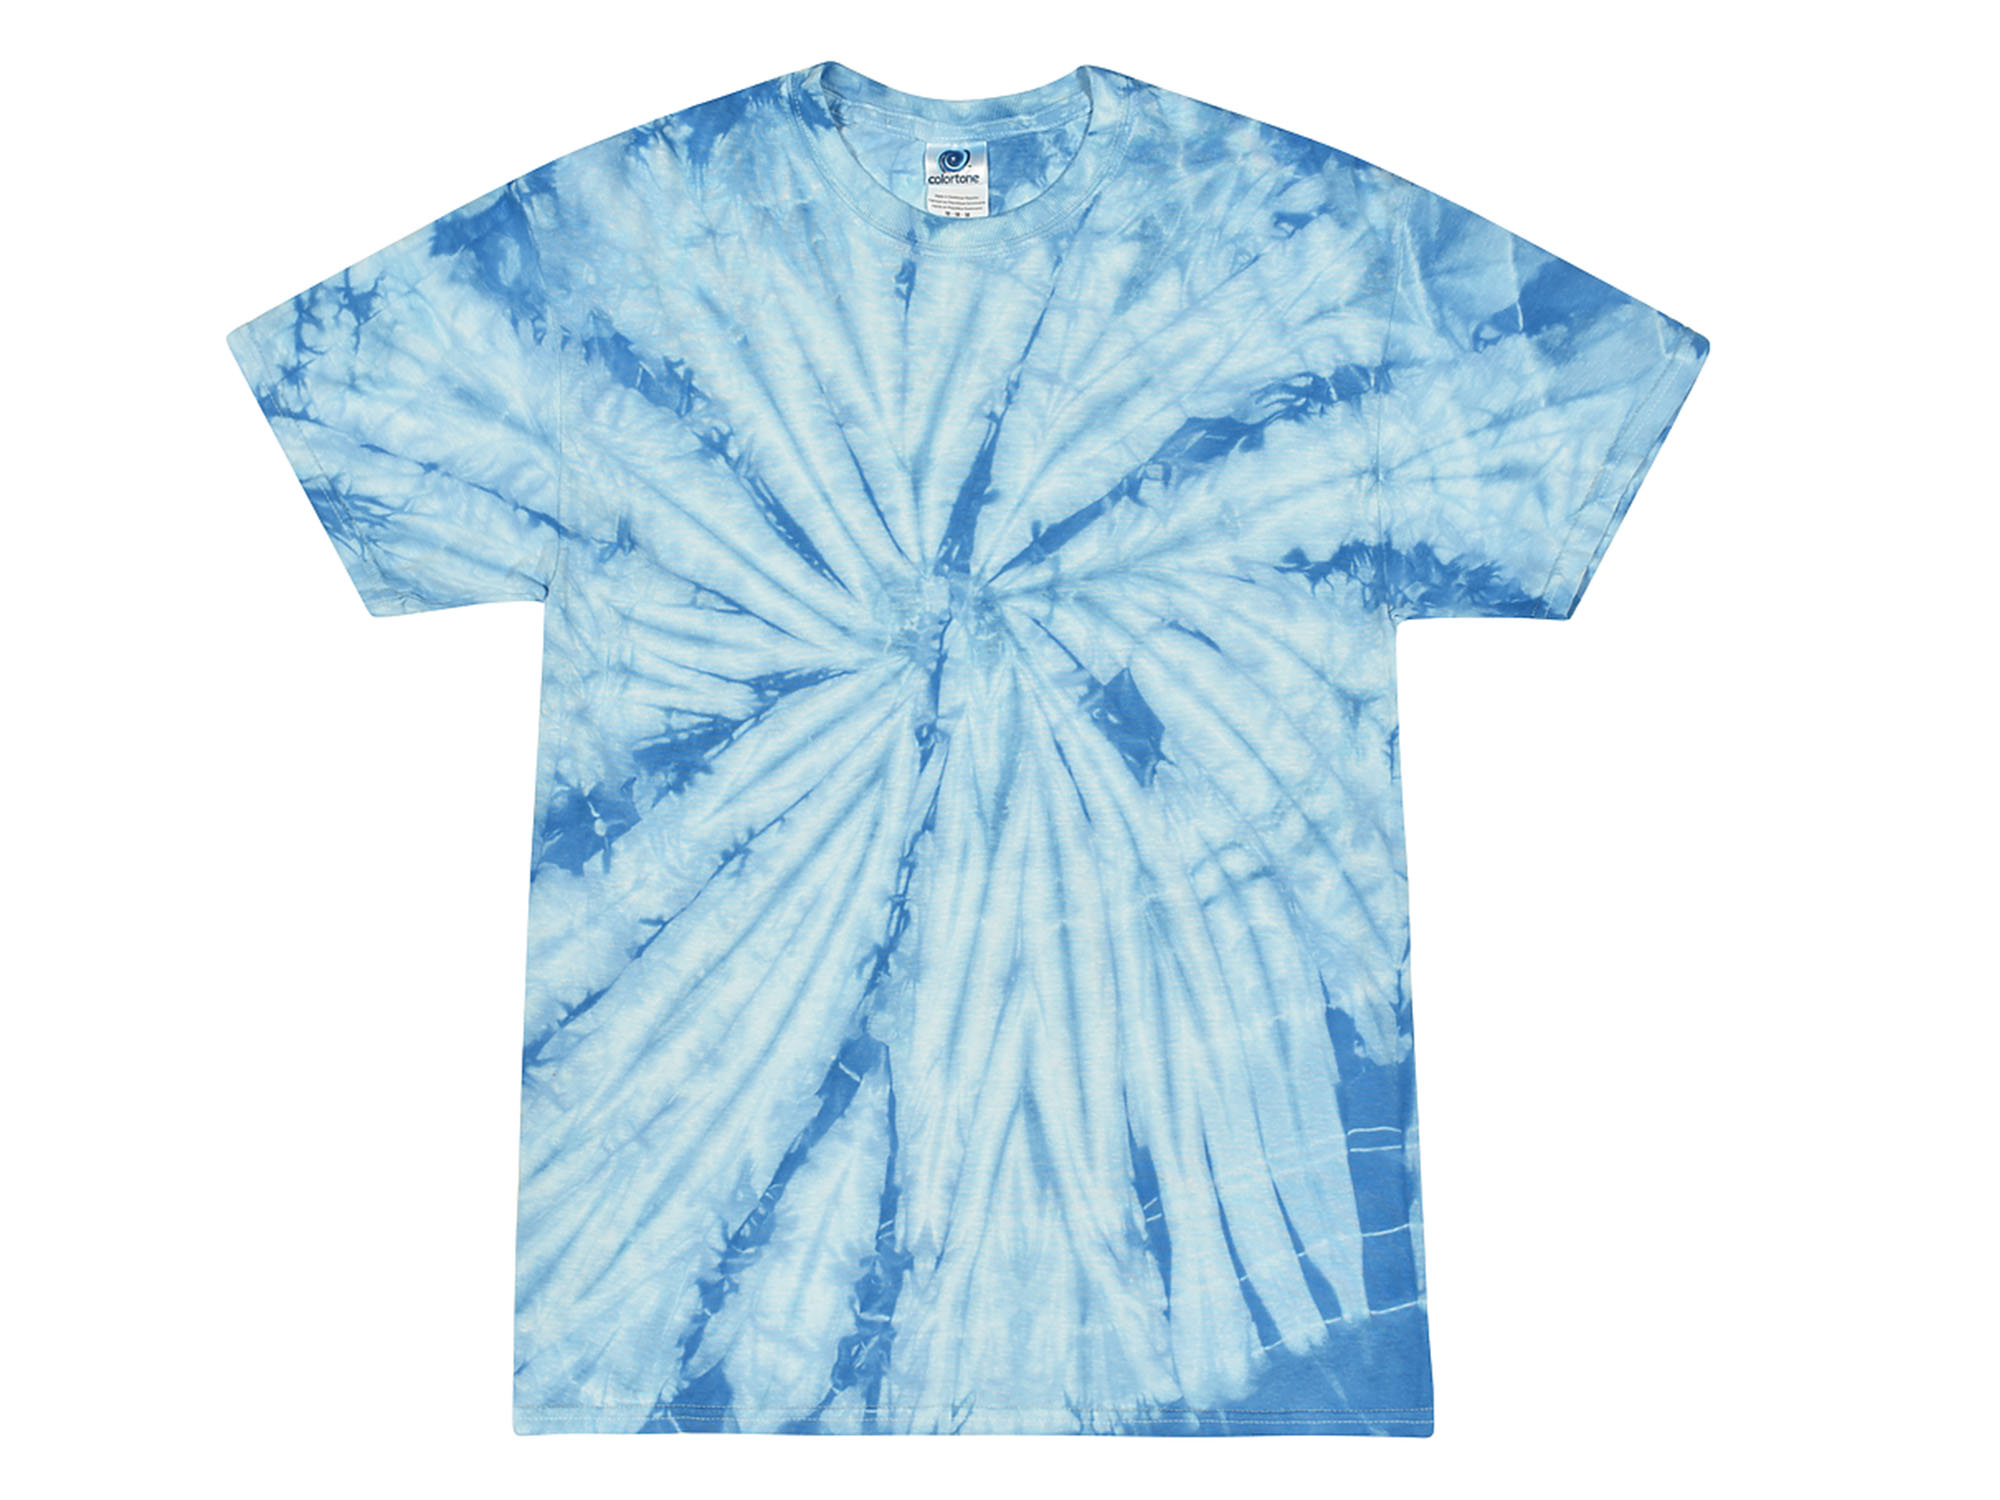 Baby Blue Tie Dye T-Shirt - Tie Dye Space